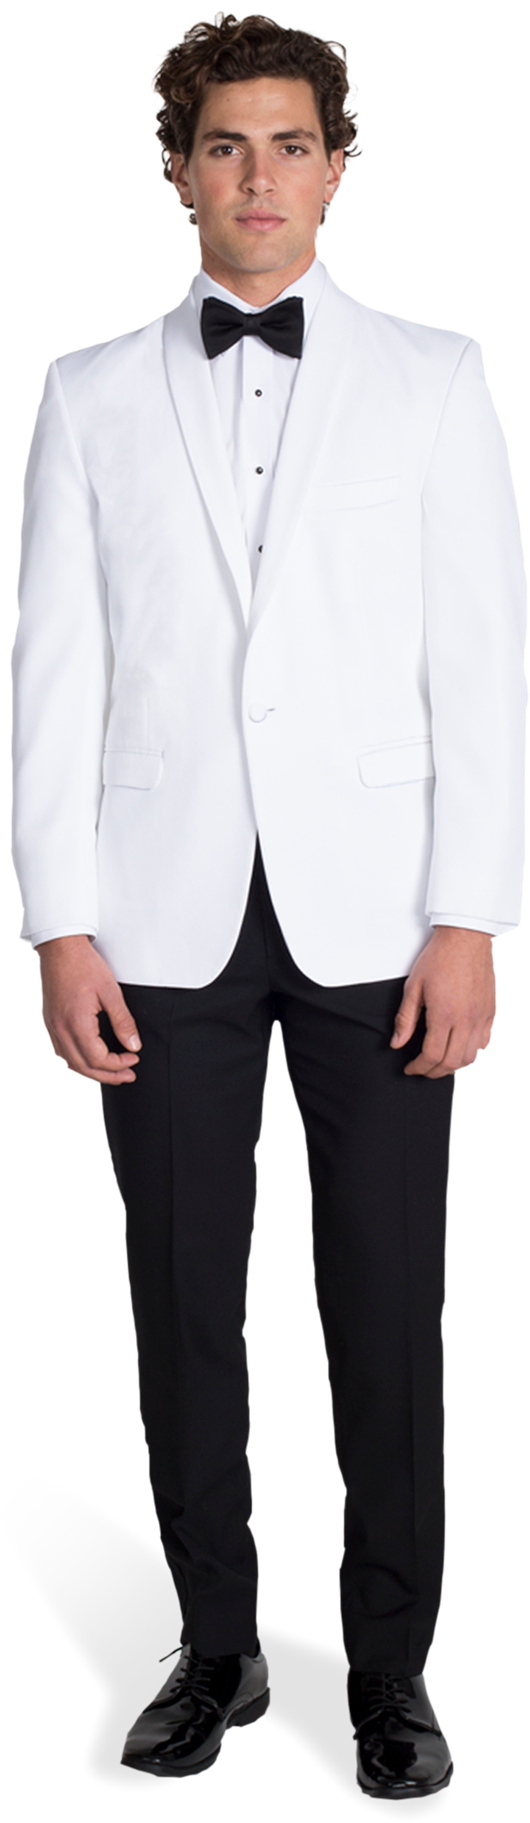 Elegant White Tuxedo Portrait PNG